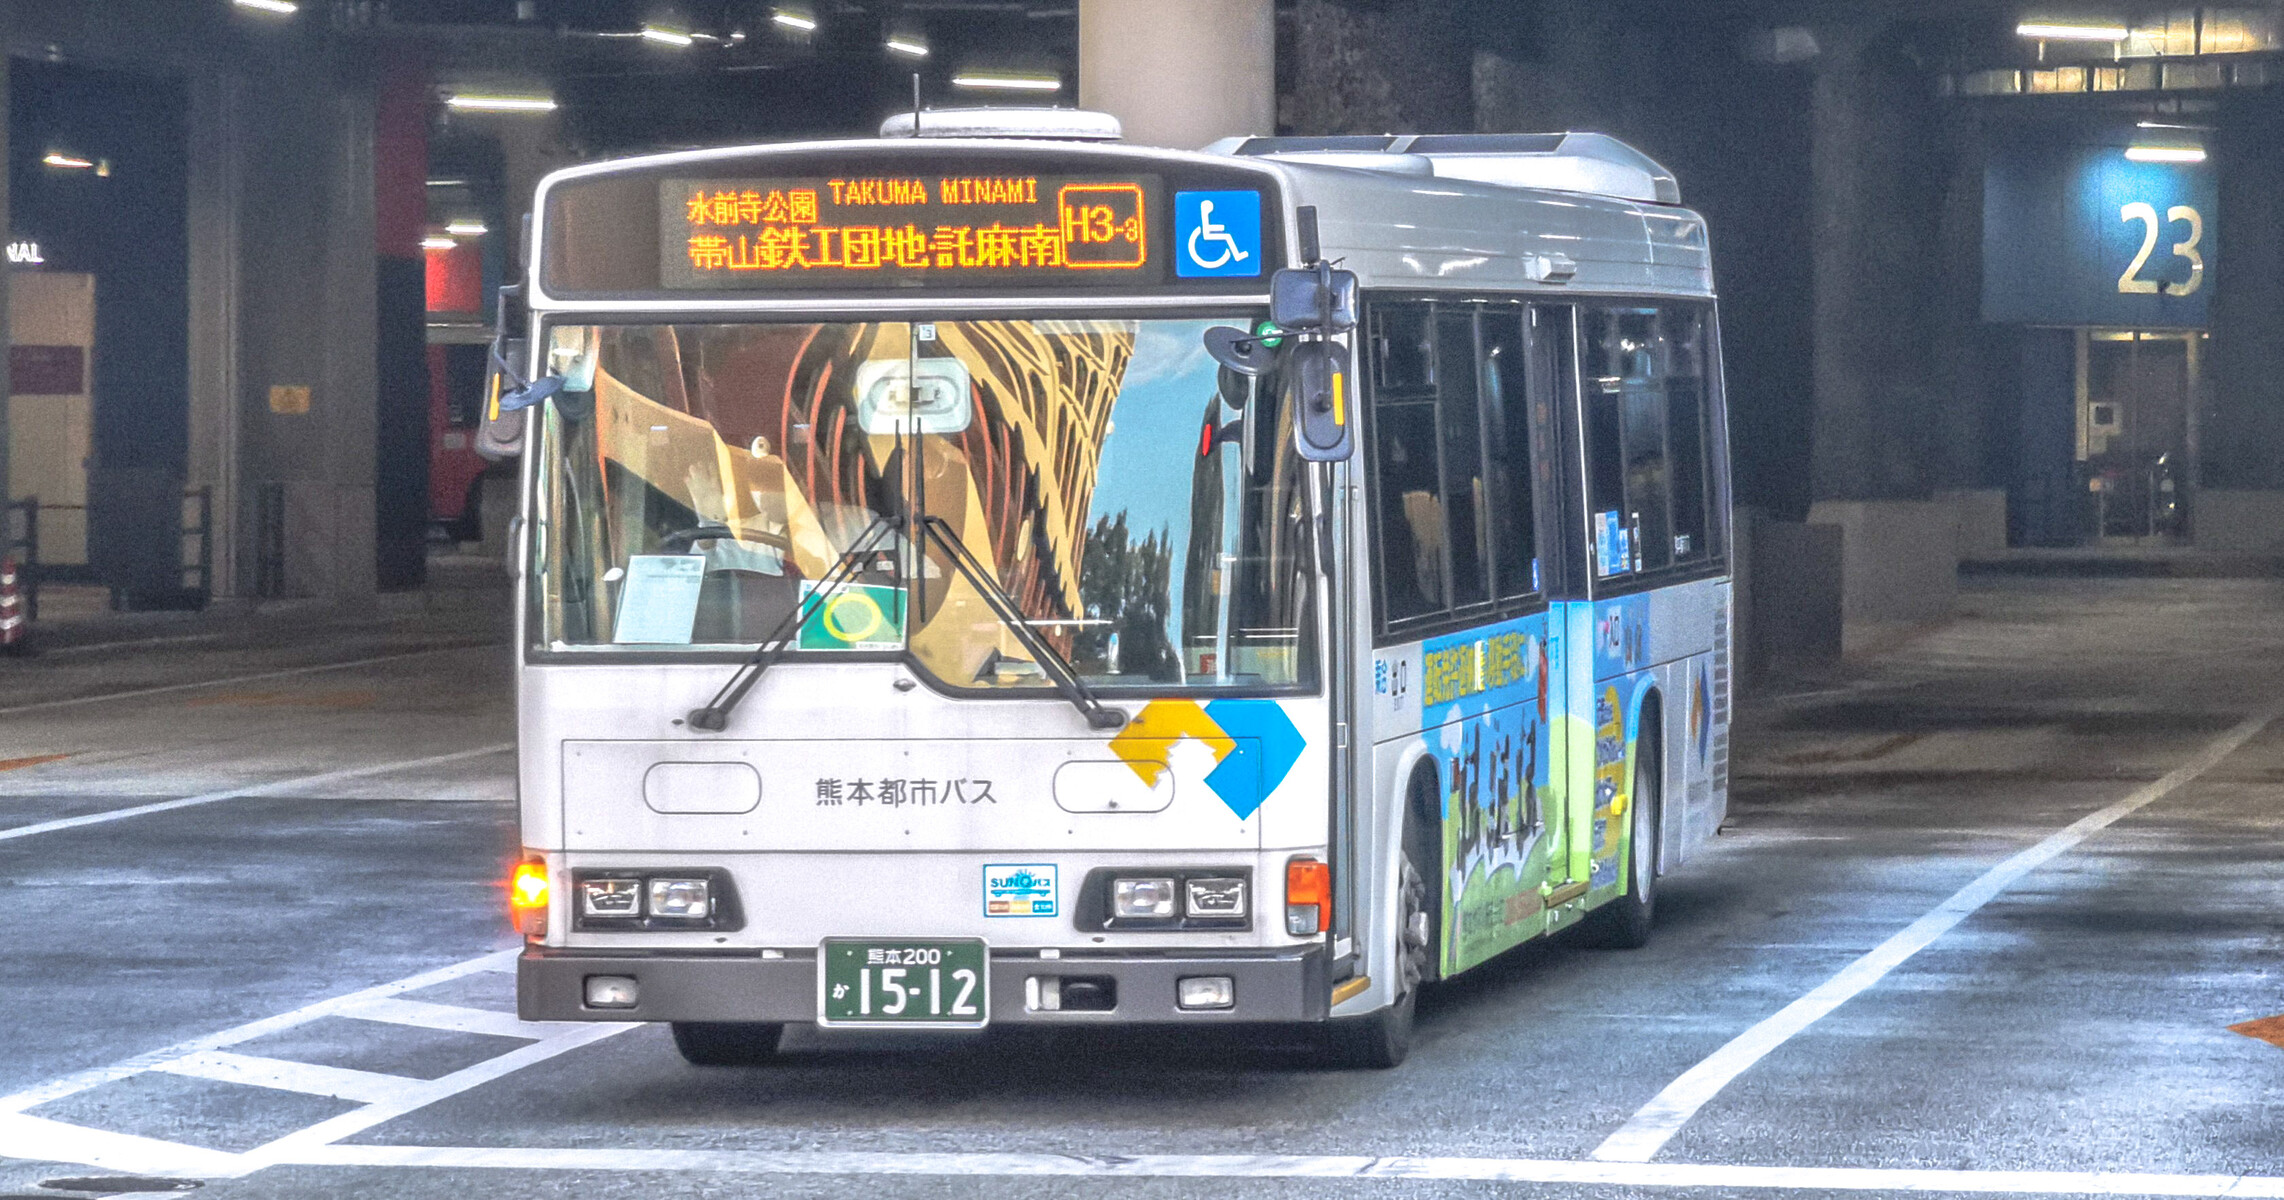 熊本都市バス 熊本0か1512 ｂｕｓ画像館熊本 高速きりしま号 熊本ー鹿児島 10 1より車両タイプをトイレなし4列シート44席からトイレ付4列シート37席へ変更 産交便のみ